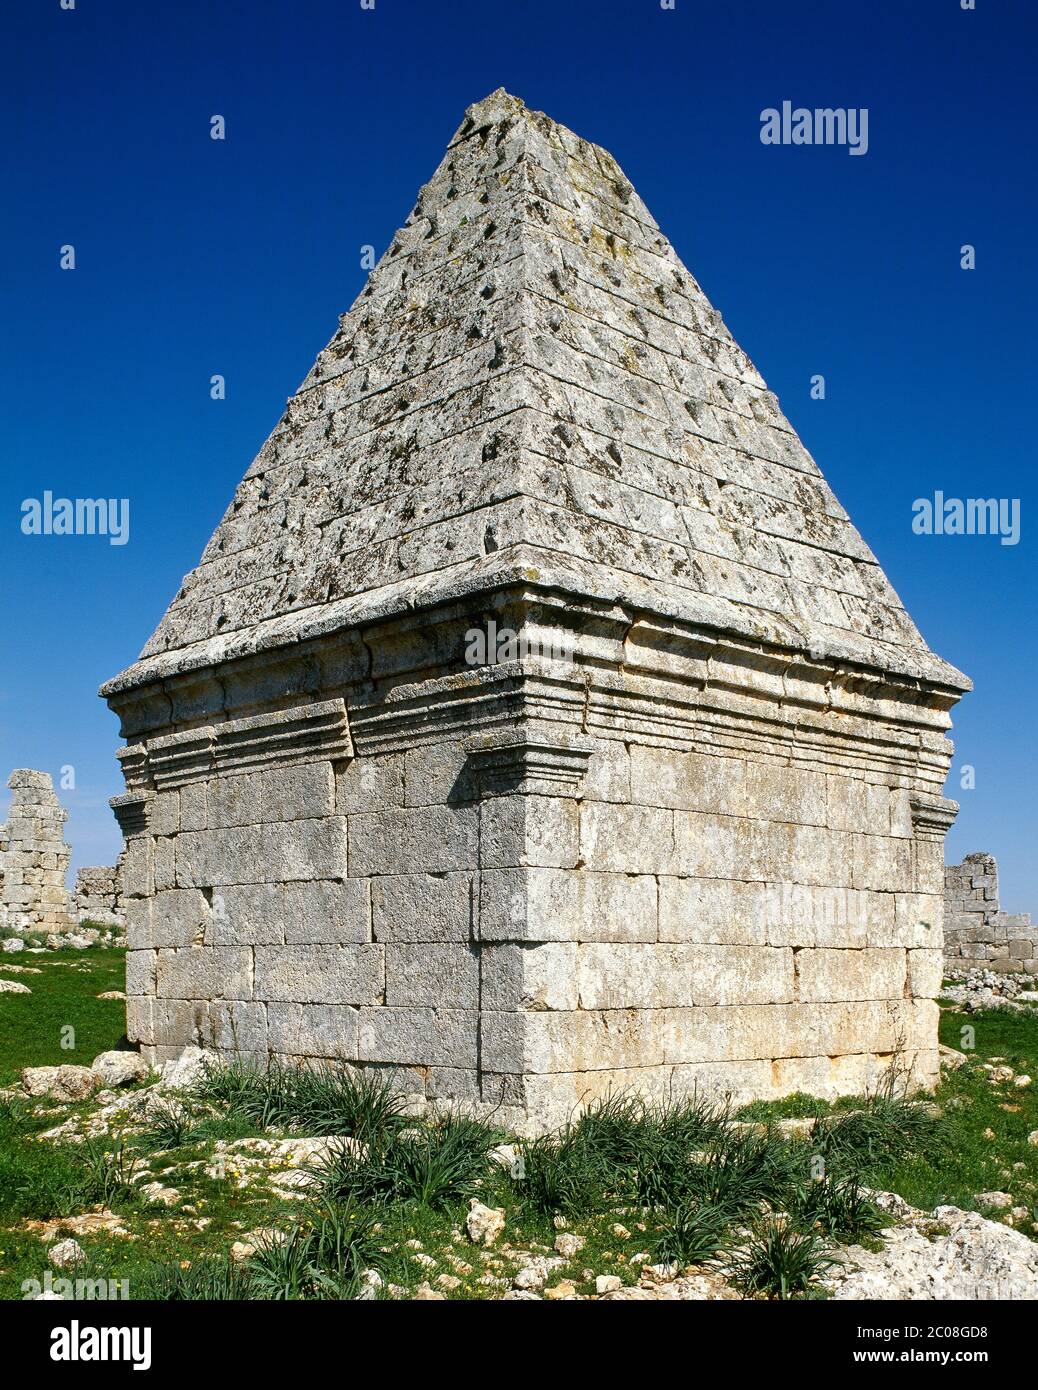 Syrien. Tote Städte. Bara. Byzantinisches pyramidenförmiges Grab. Foto vor dem syrischen Bürgerkrieg. Stockfoto